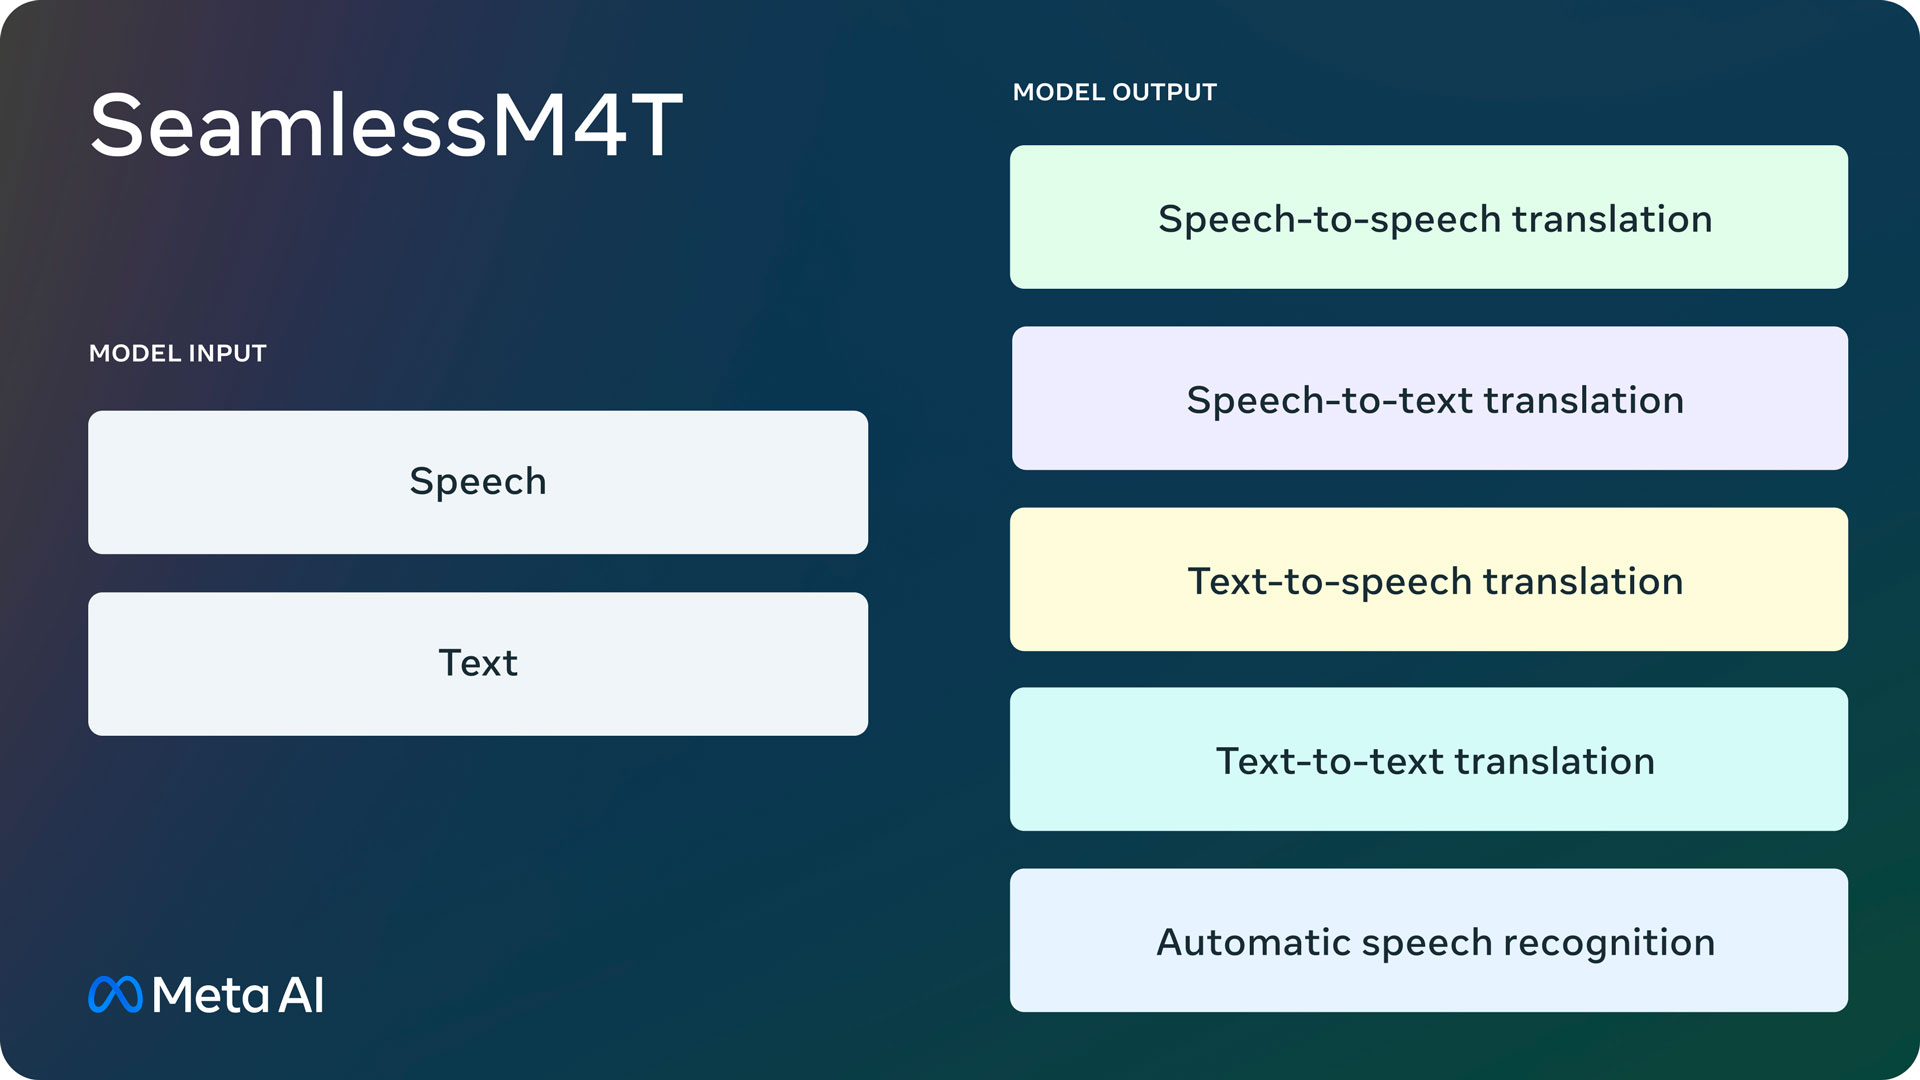 Meta ha lanzado el modelo de inteligencia artificial Seamless M4T que traduce texto y voz a 100 idiomas